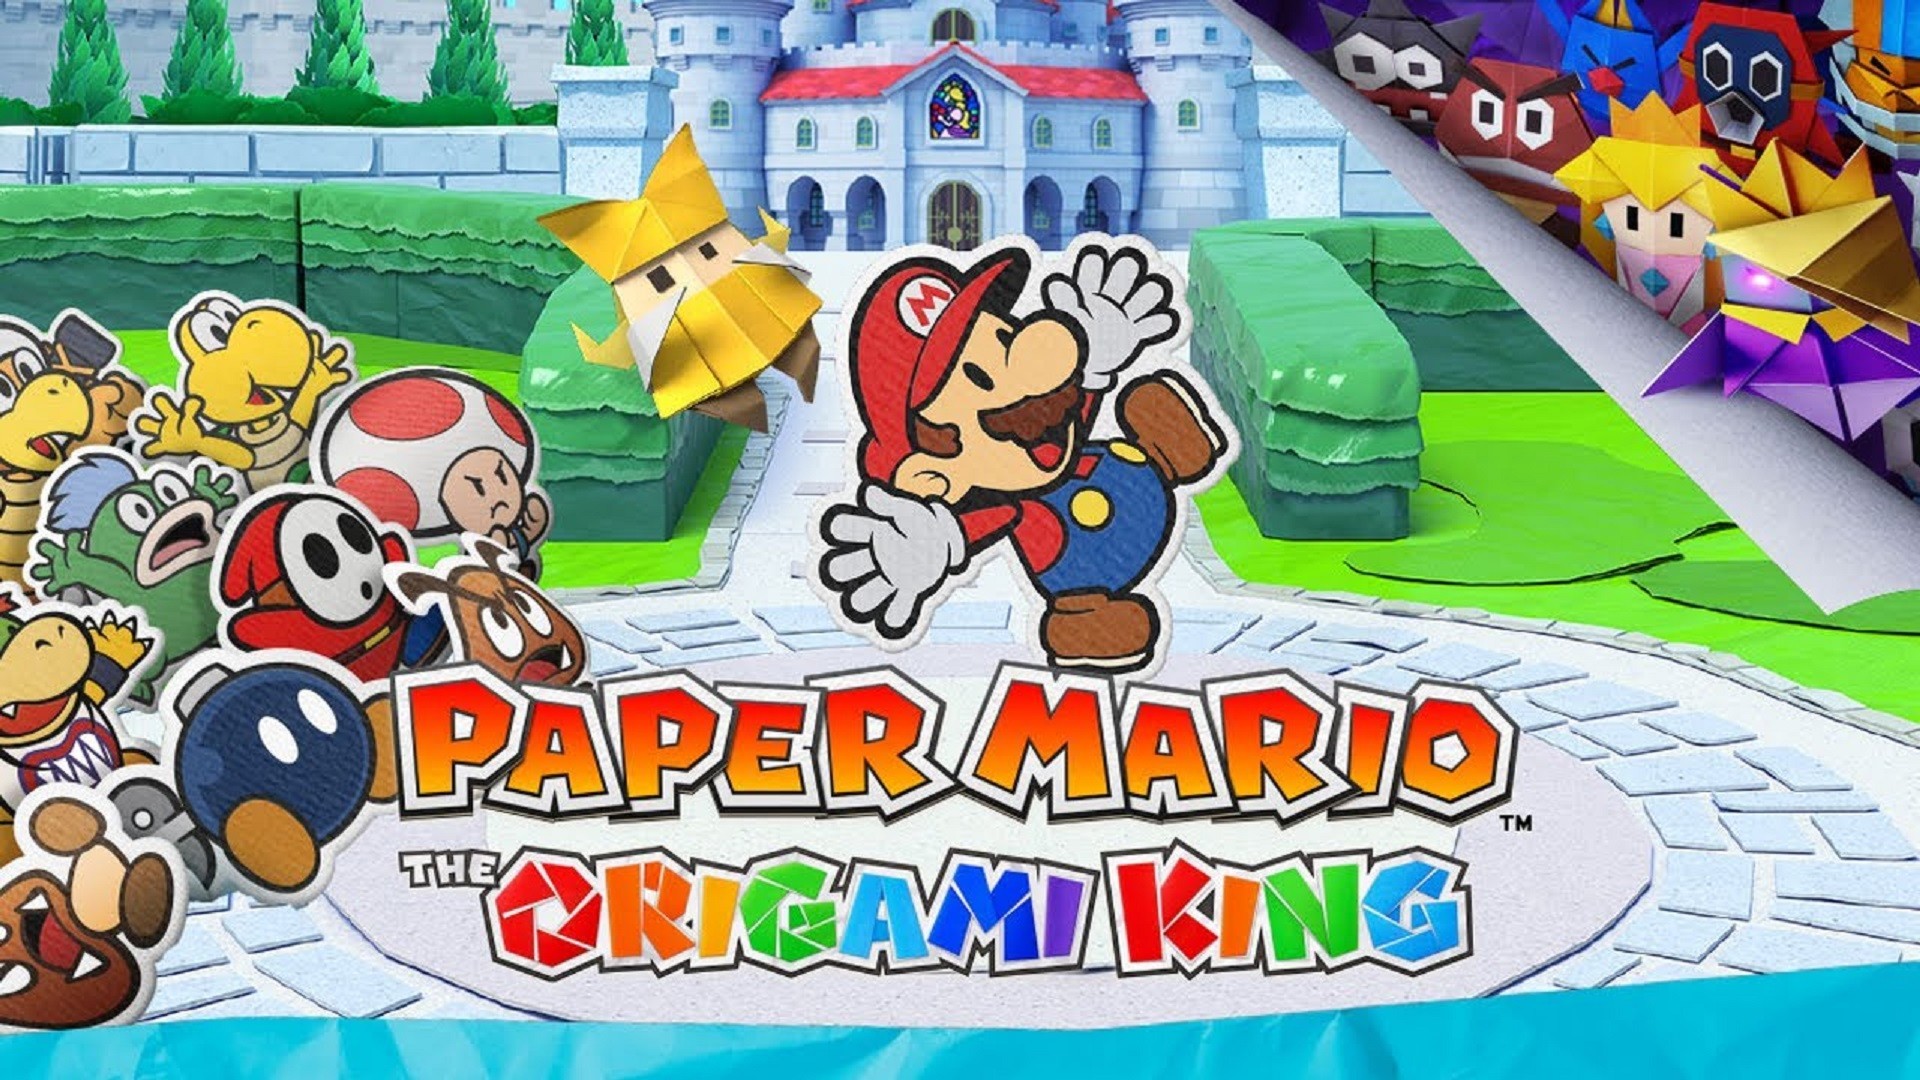 Paper mario origami king. Paper Mario the Origami King (Switch). Paper Mario Origami King Nintendo Switch. Paper Mario™: the Origami King.